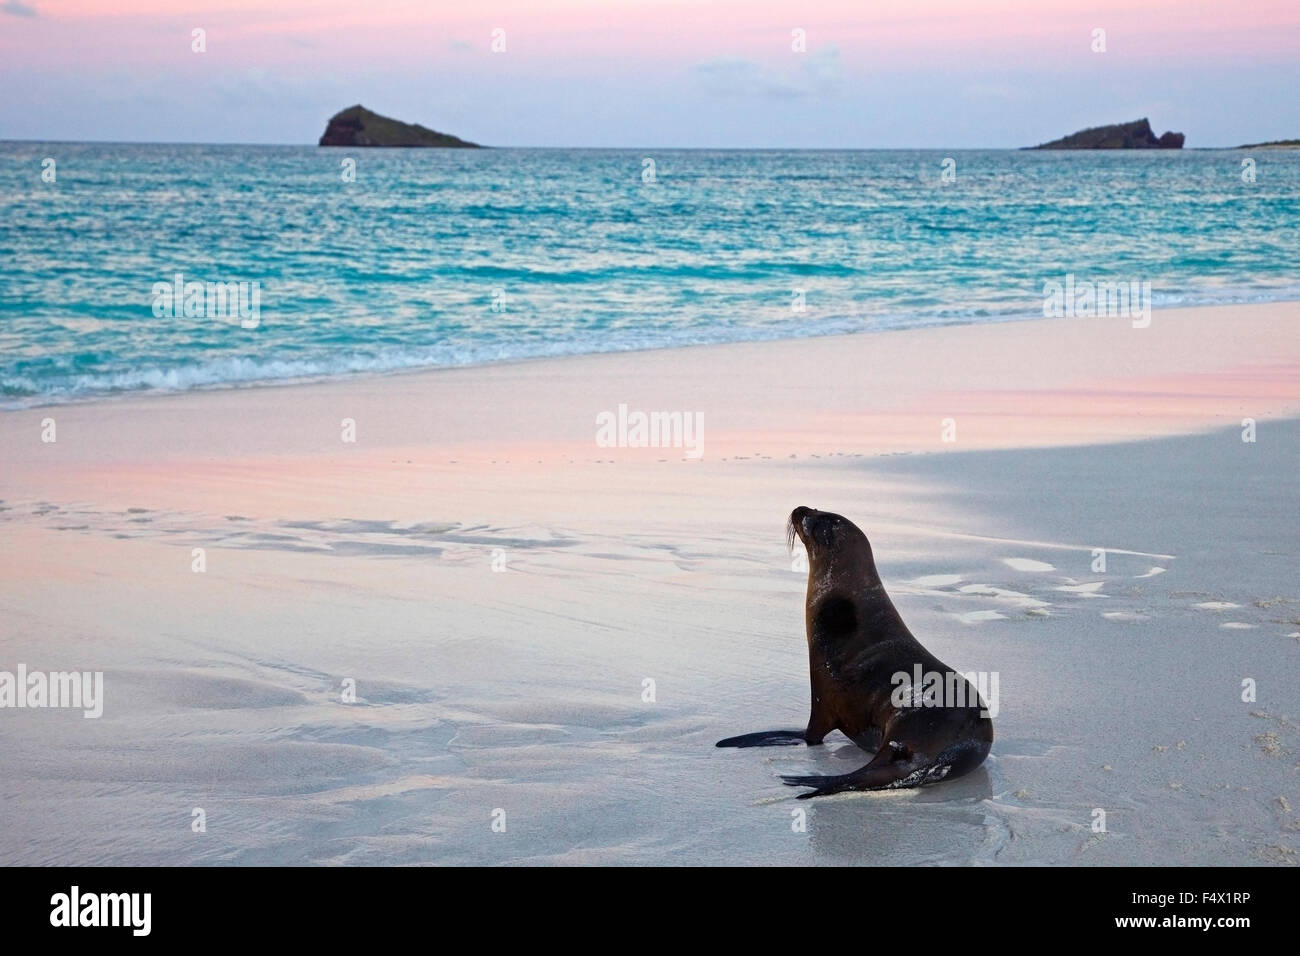 Galapagos Sea Lion (Zalophus wollebaeki) sur la plage au crépuscule dans les îles Galapagos. Espèces en voie de disparition. Banque D'Images